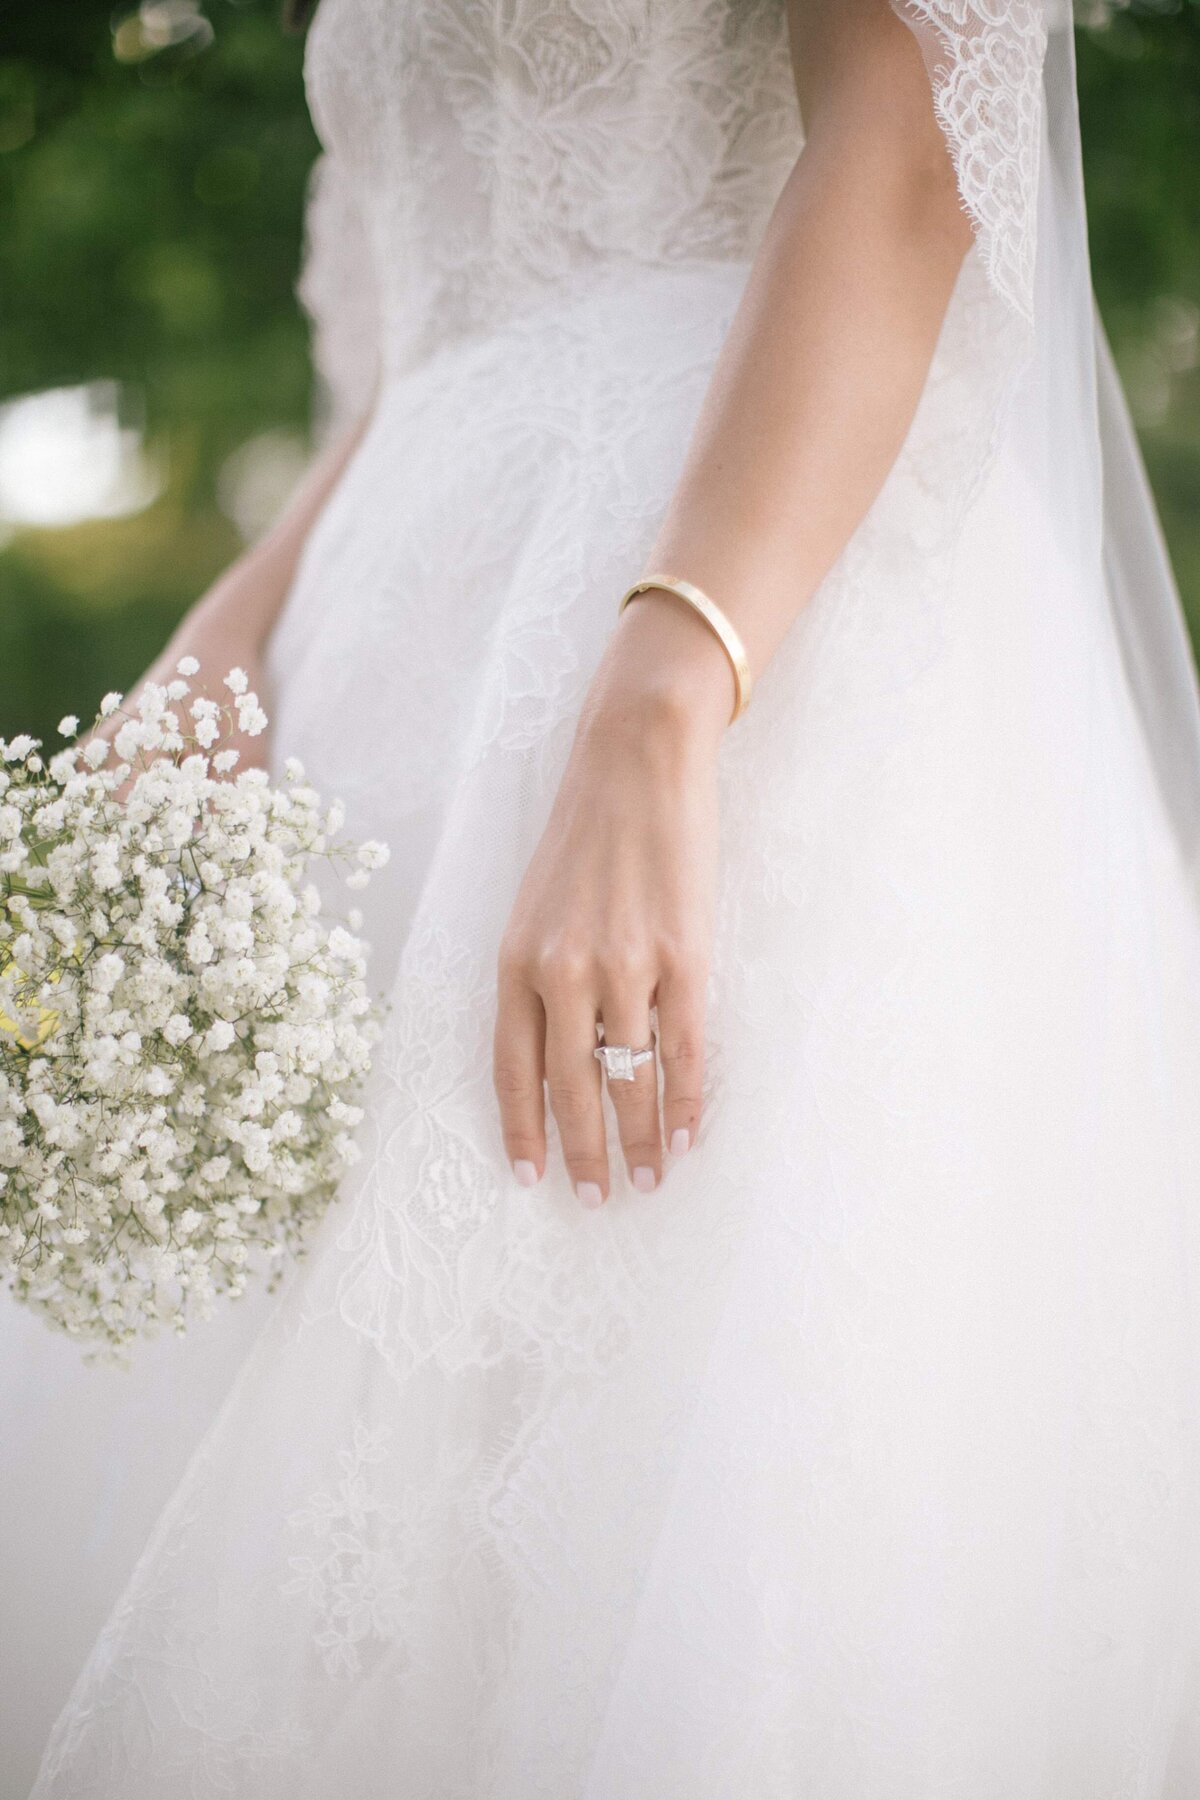 Bridal Gown Details